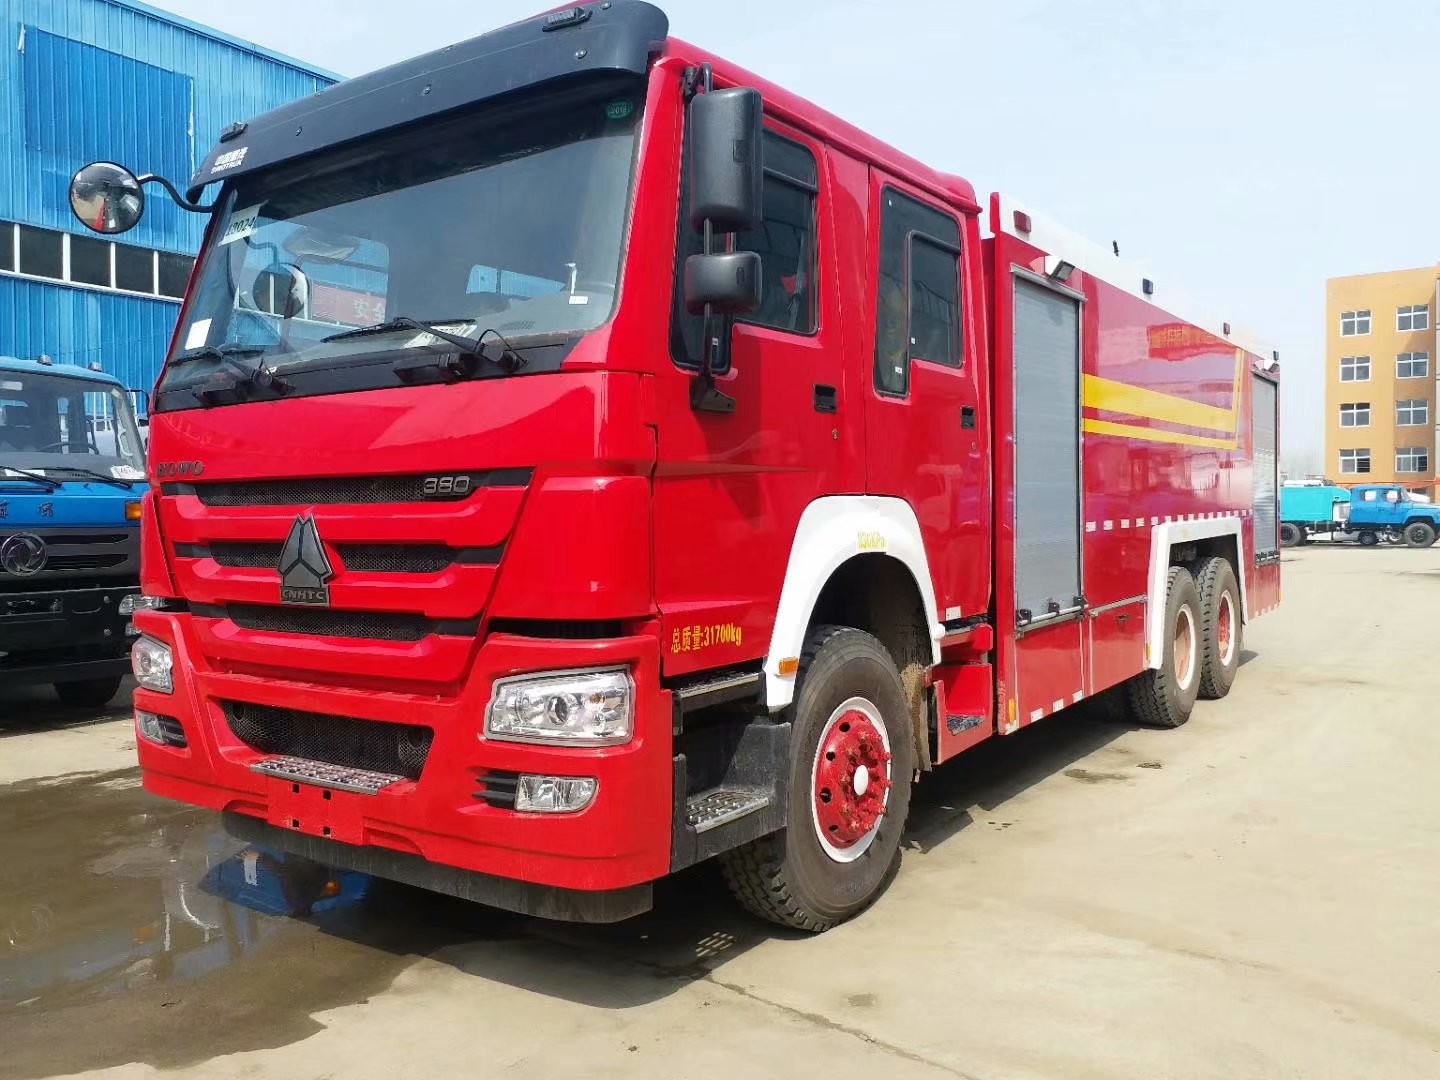 الأحمر شاحنة لأغراض خاصة ، HOWO الثقيلة في حالات الطوارئ 6X4 مكافحة الحرائق شاحنة